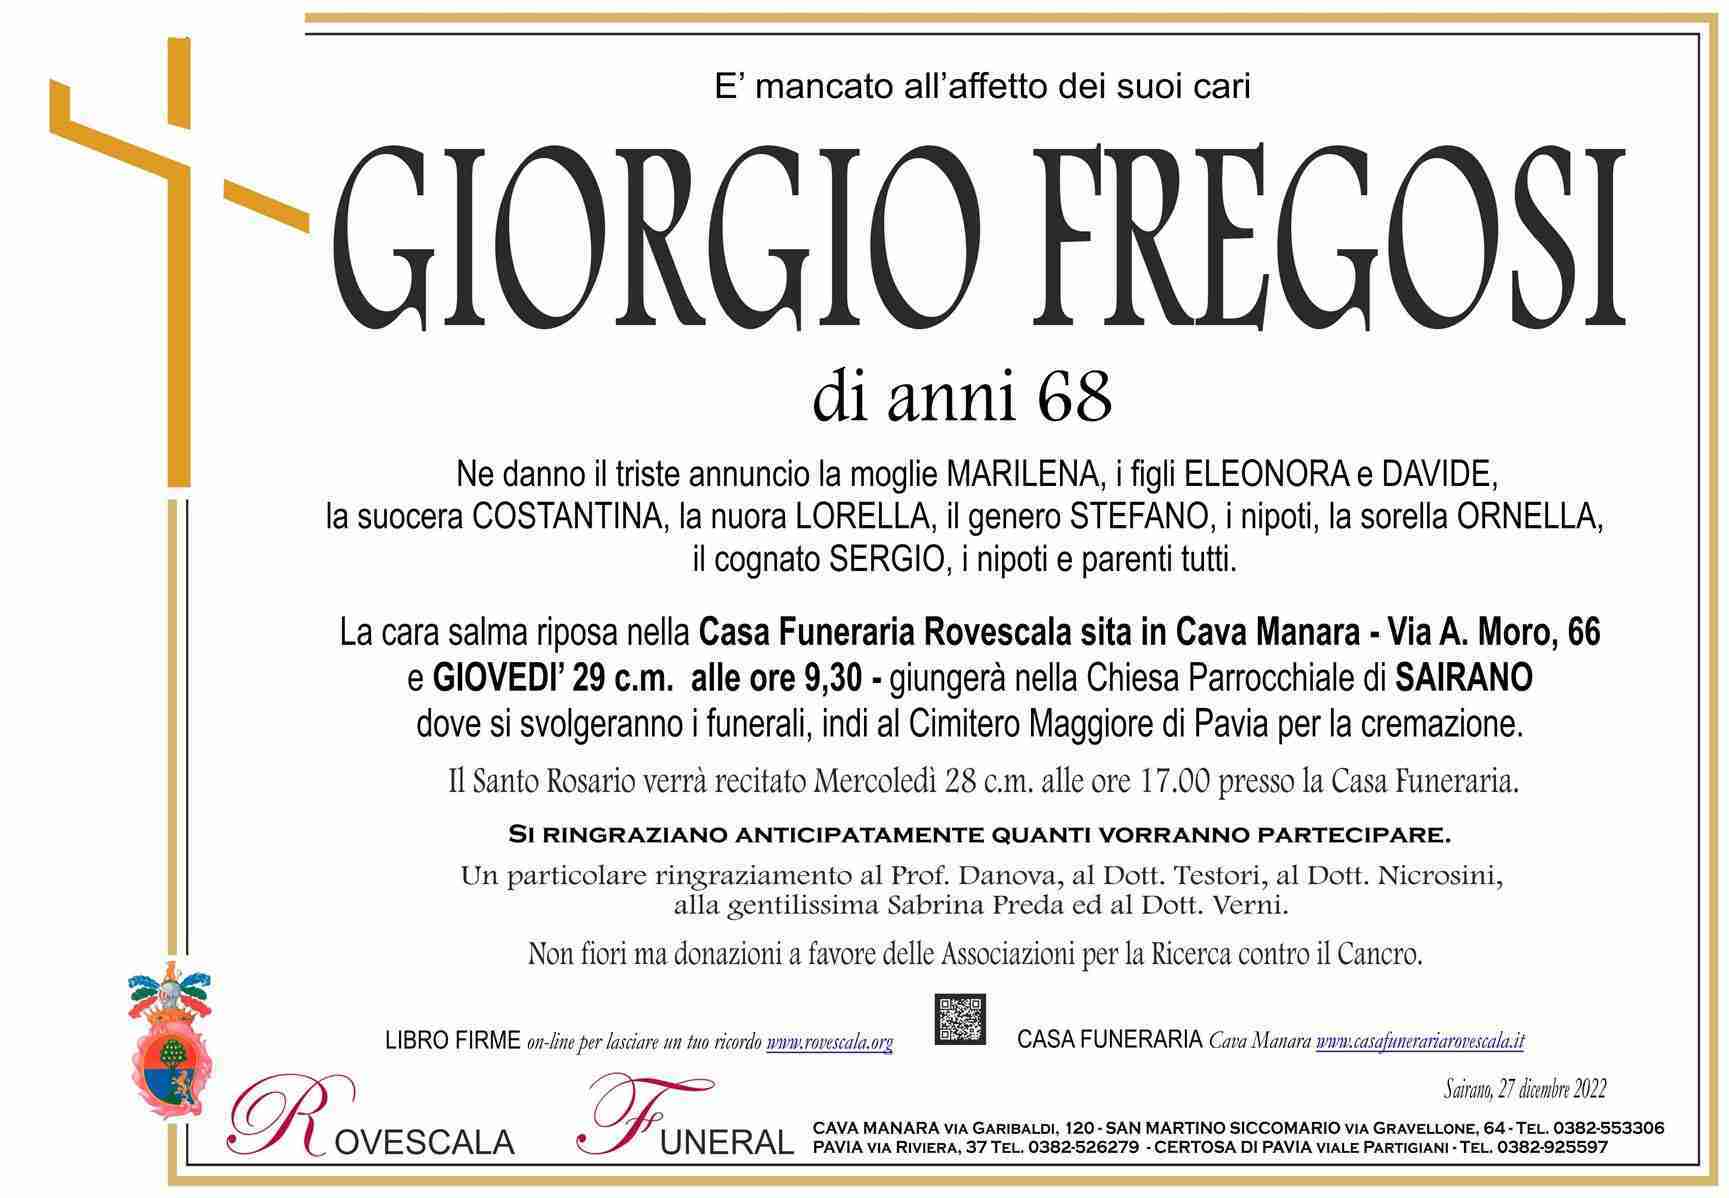 Giorgio Fregosi